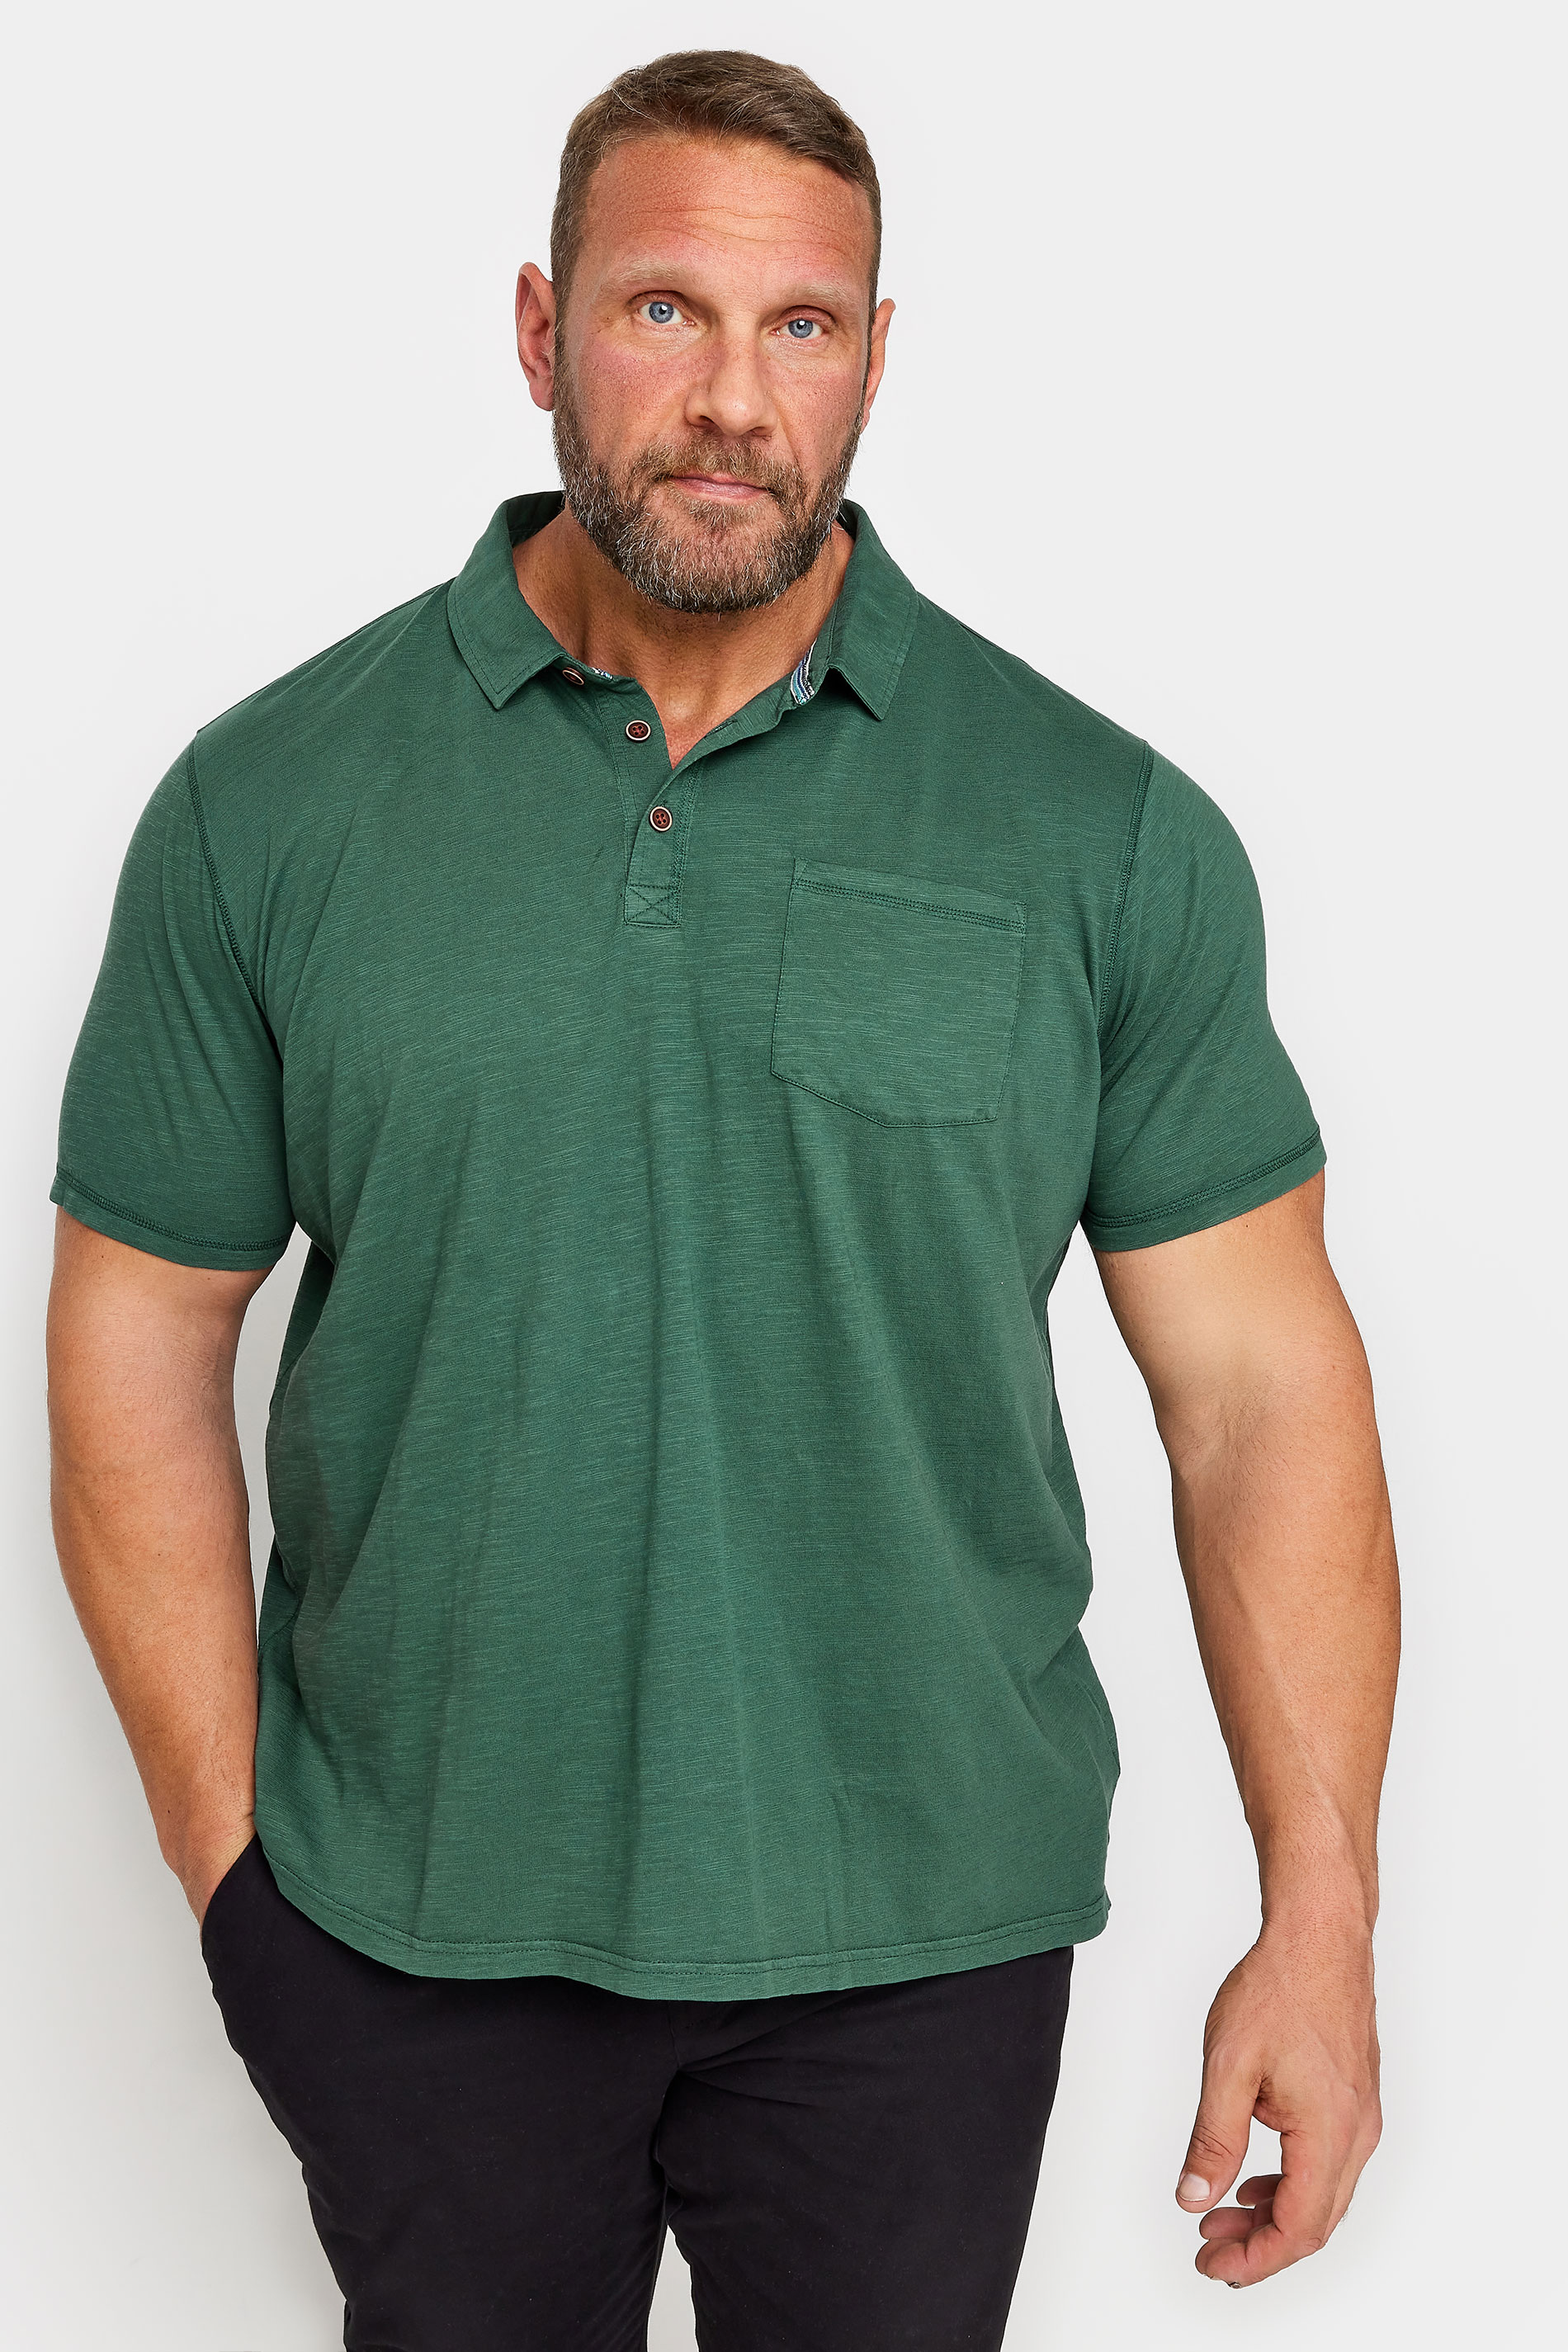 BadRhino Big & Tall Pine Green Slub Polo Shirt | BadRhino 1